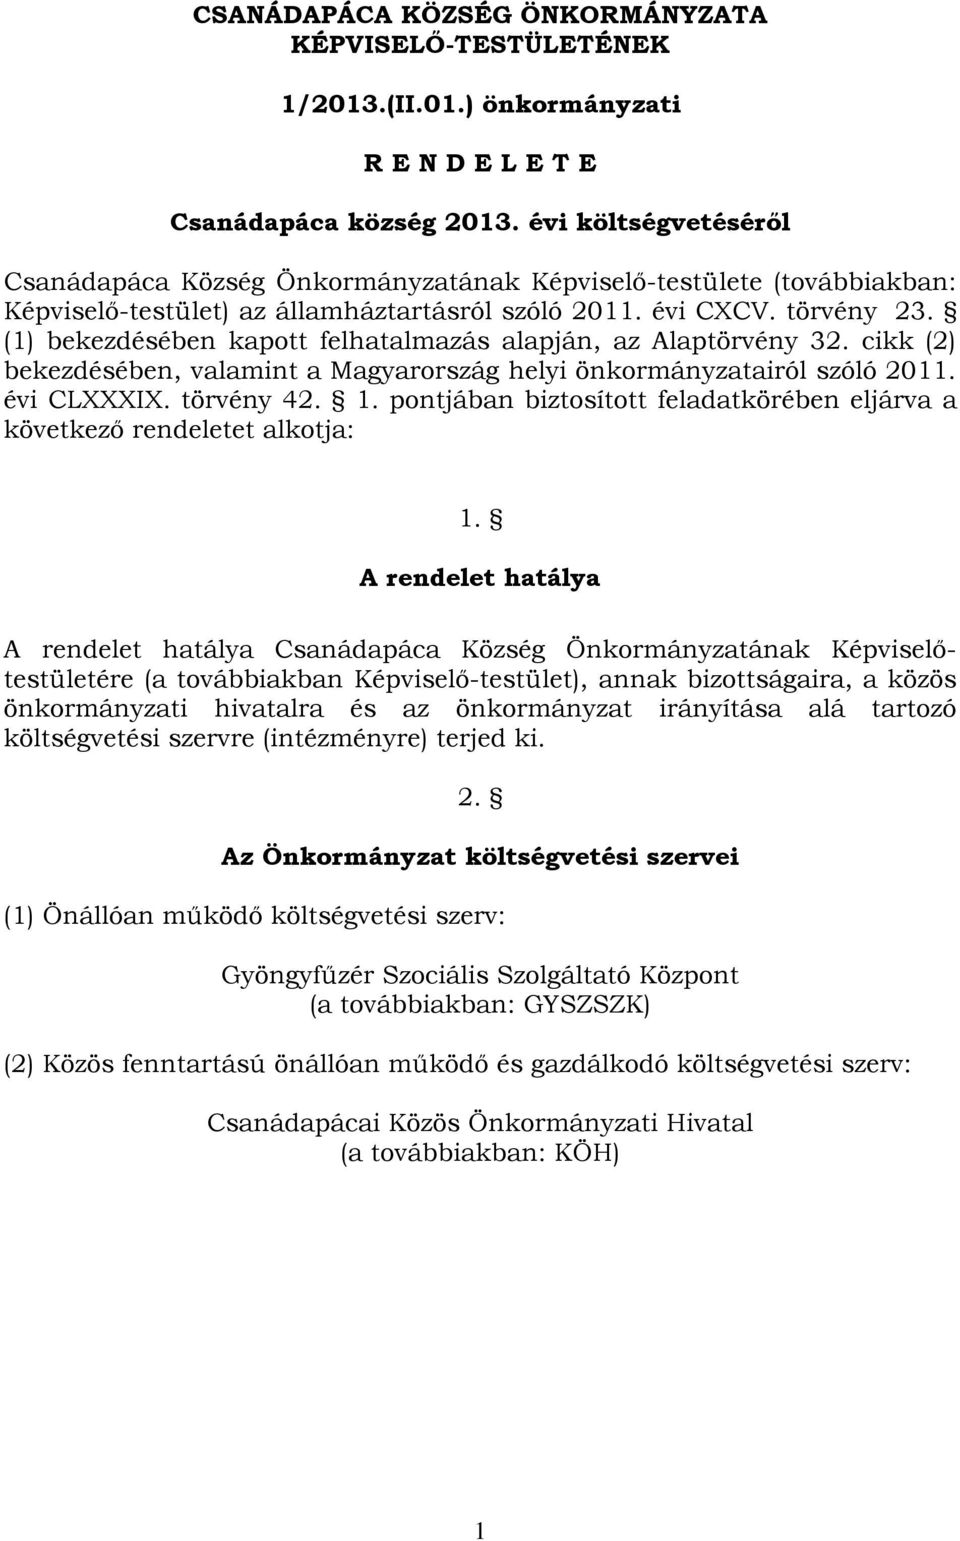 (1) bekezdésében kapott felhatalmazás alapján, az Alaptörvény 32. cikk (2) bekezdésében, valamint a Magyarország helyi önkormányzatairól szóló 2011. évi CLXXXIX. törvény 42. 1.